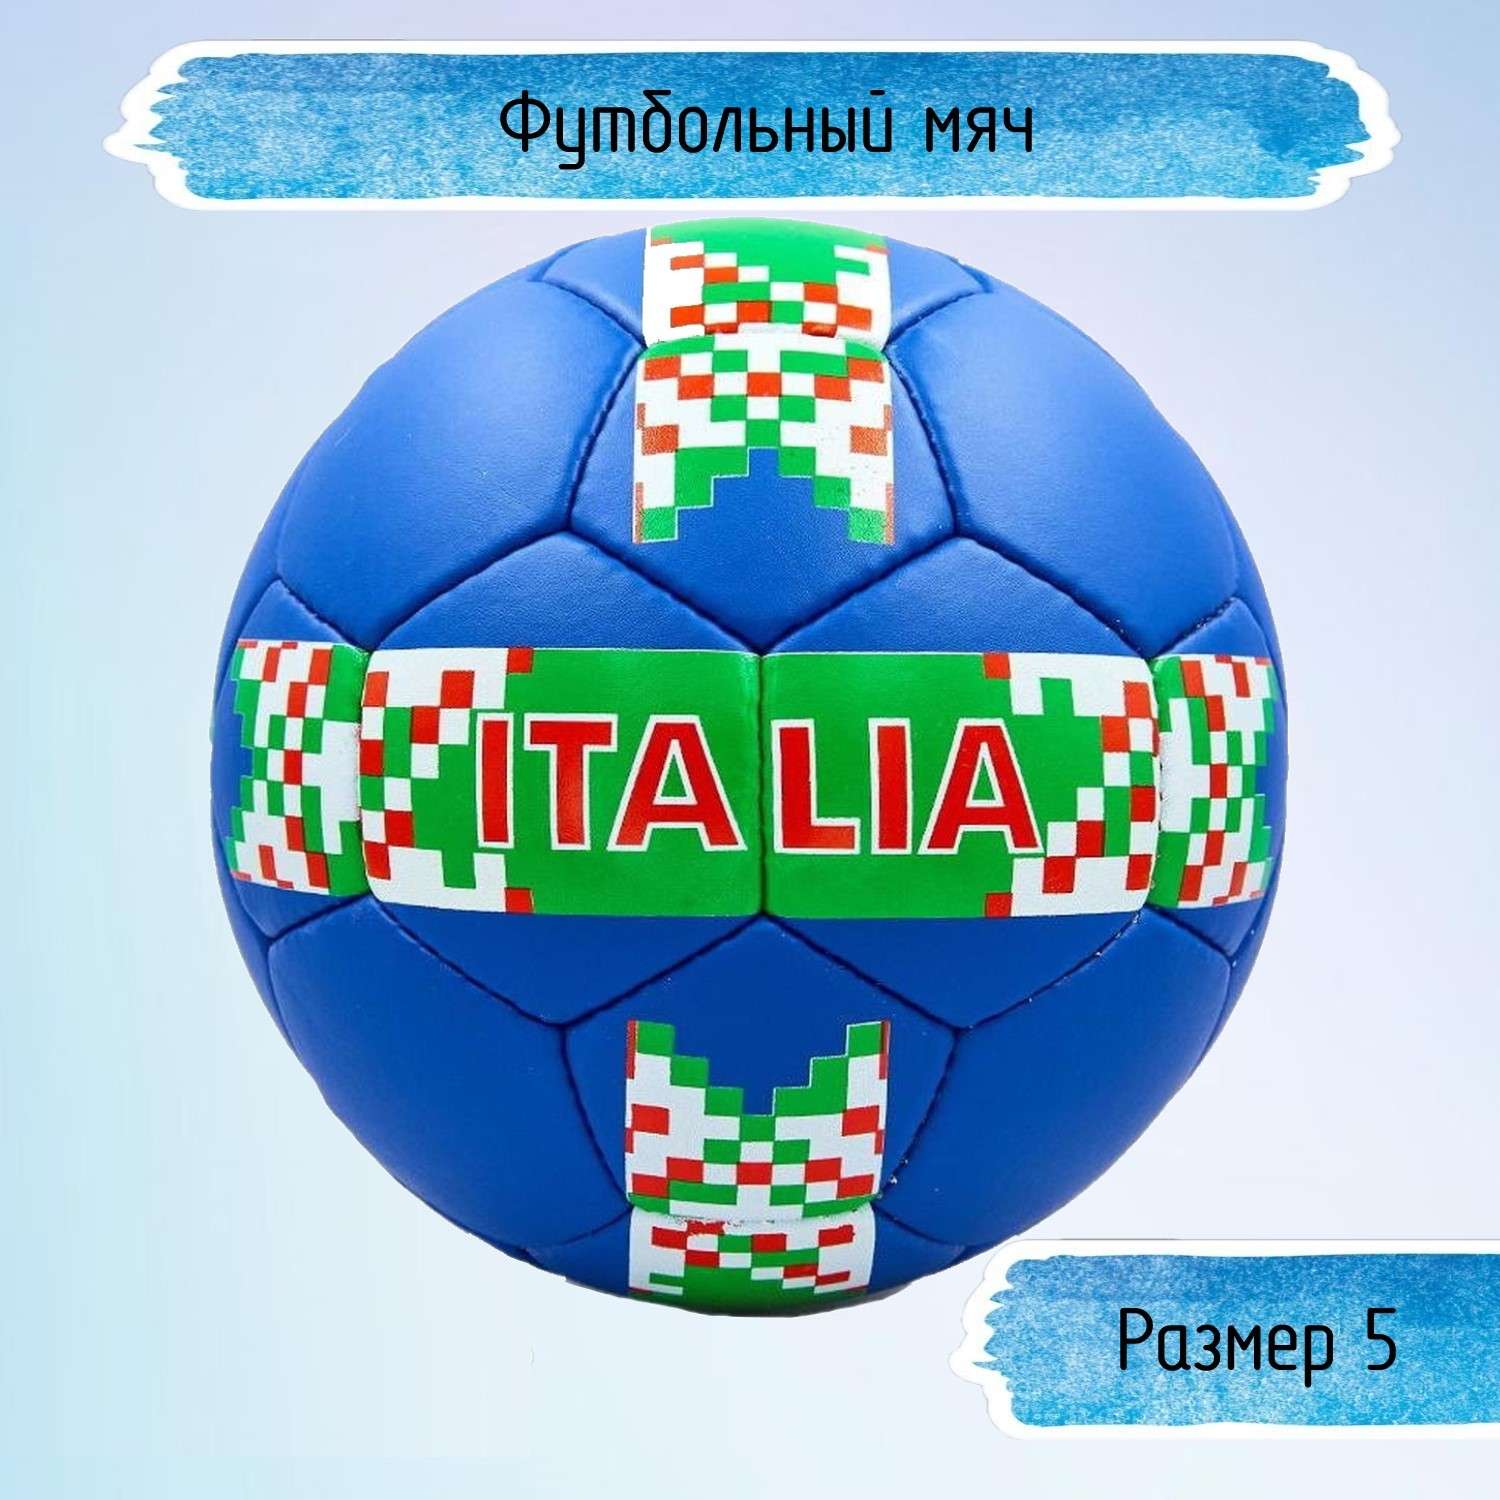 Футбольный мяч Uniglodis Италия - фото 1